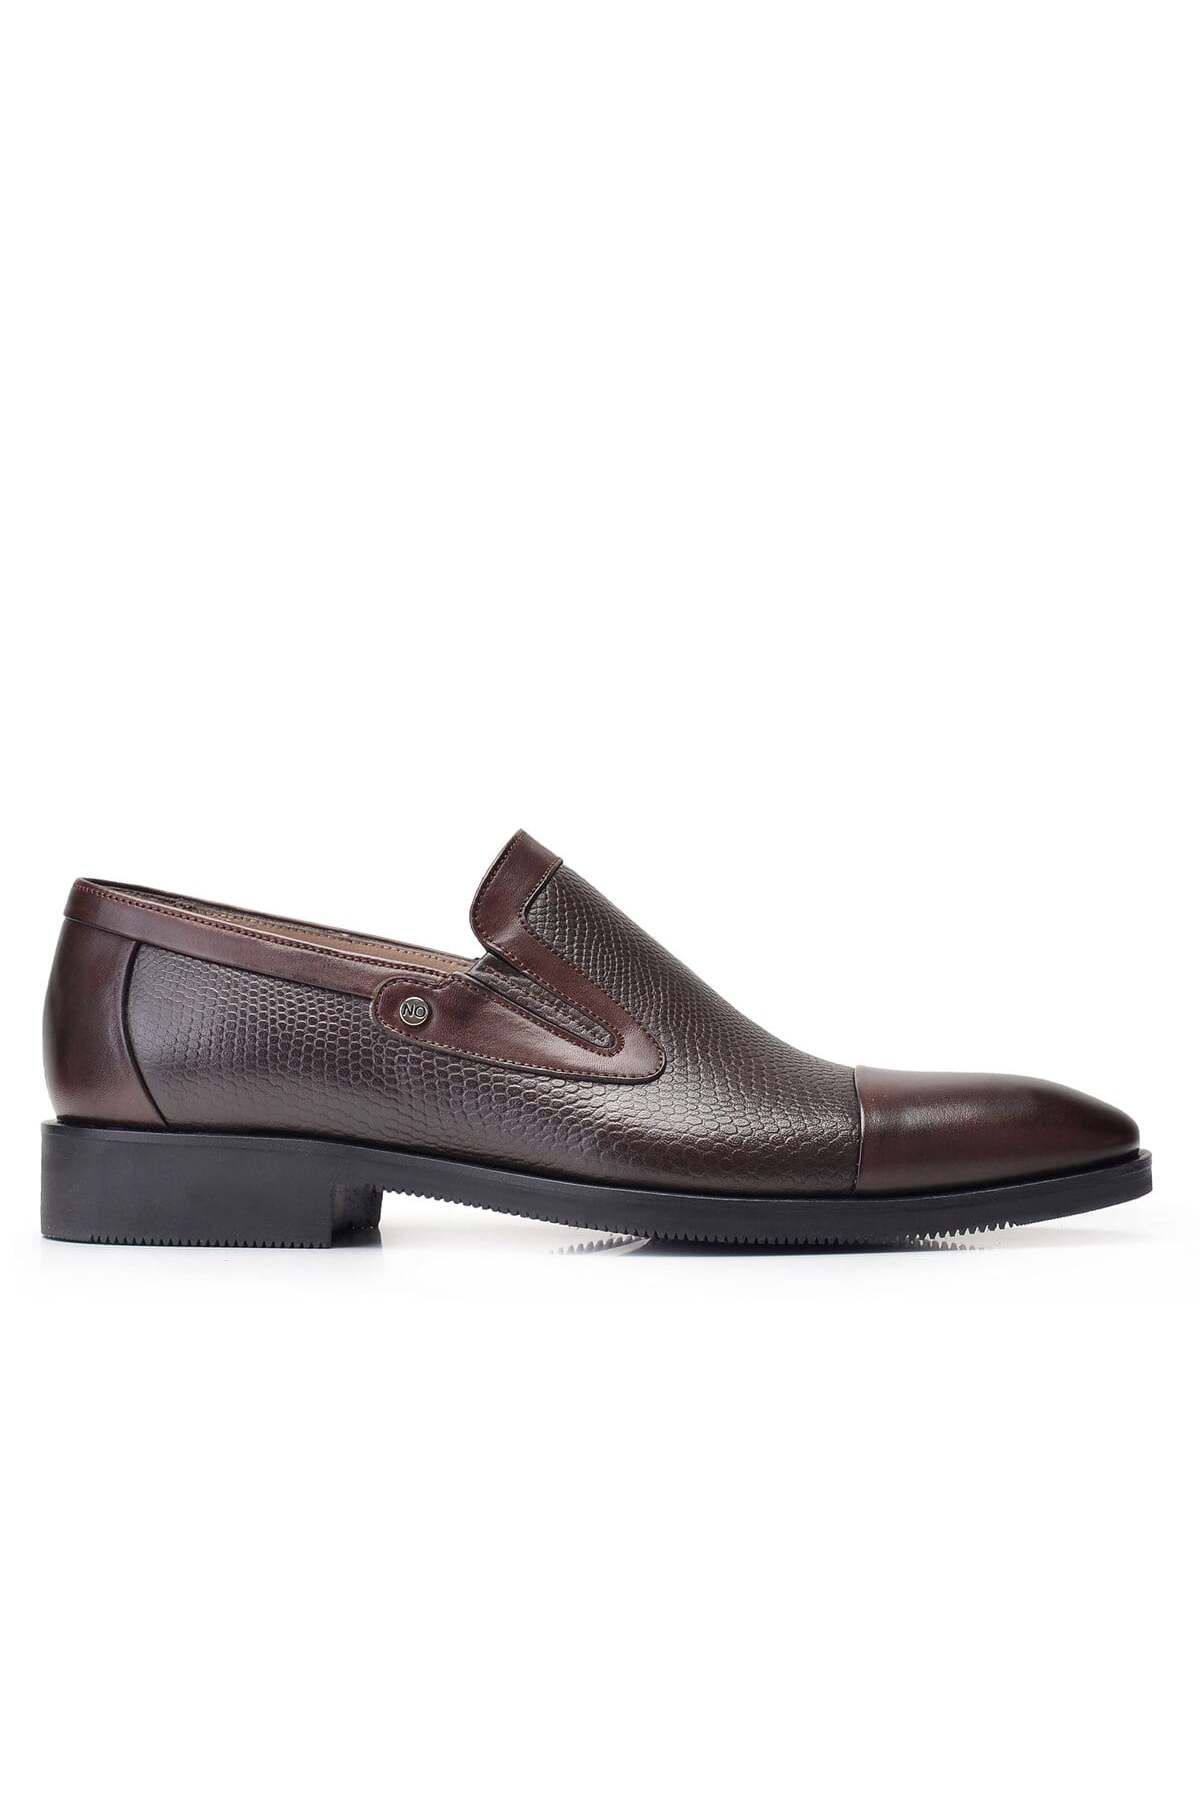 Nevzat Onay Kahverengi Klasik Loafer Erkek Ayakkabı -11852-